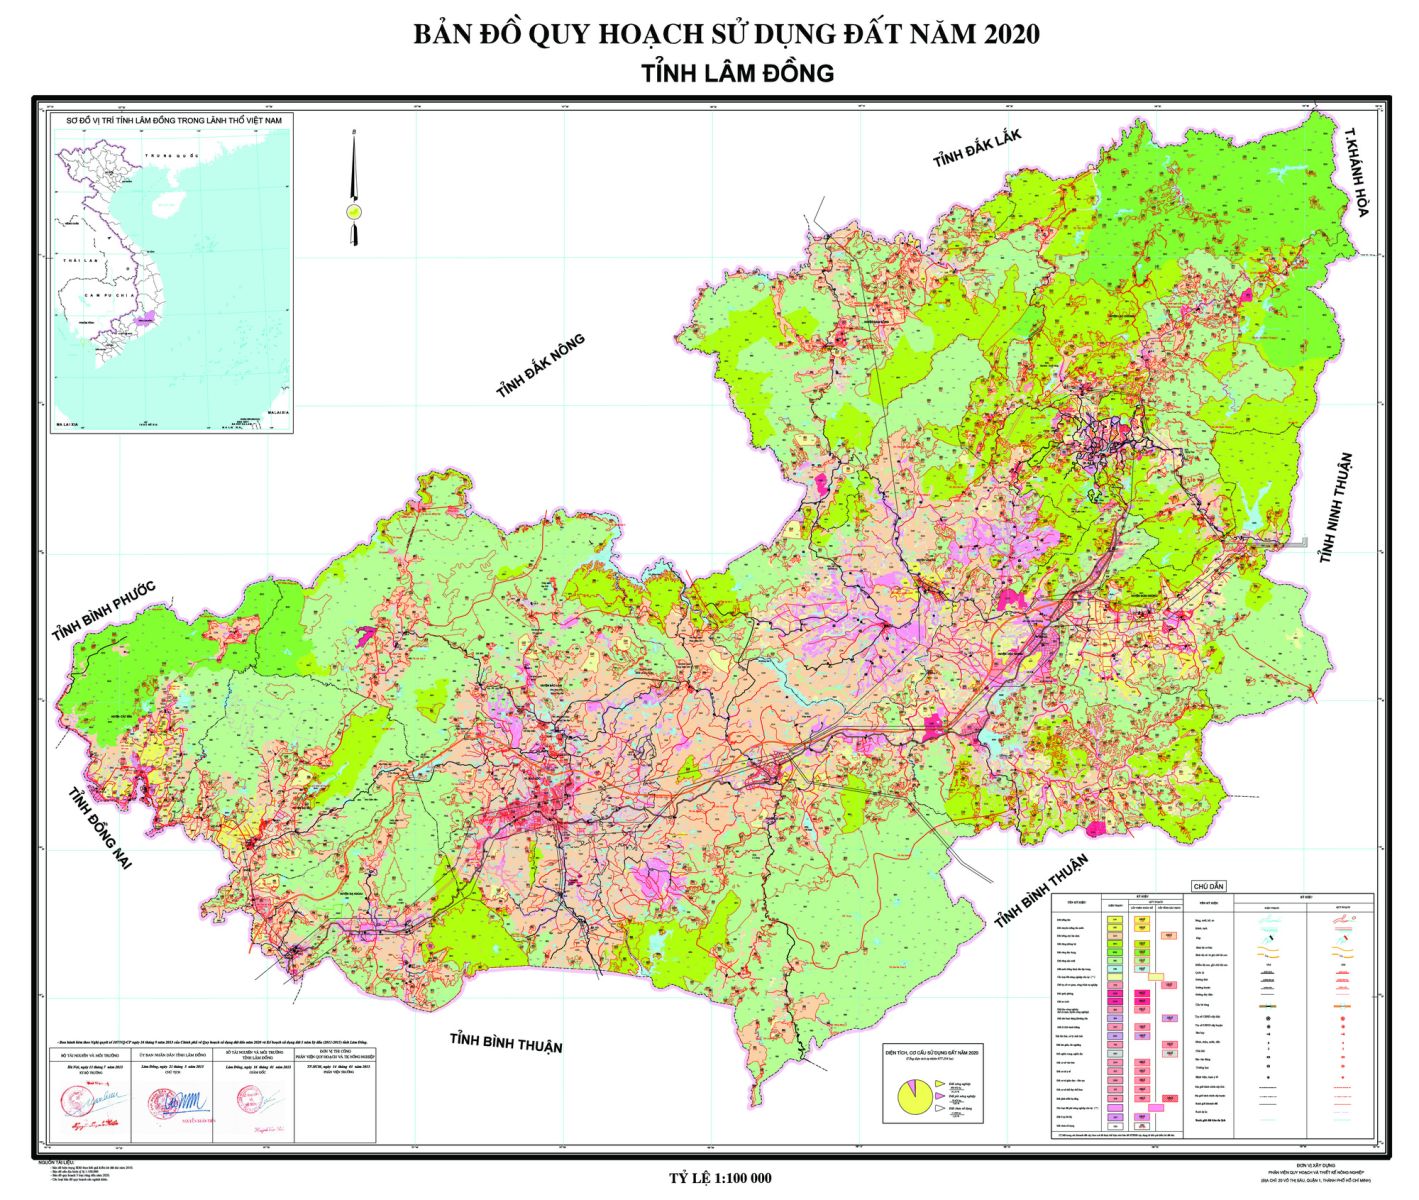 Quy hoạch Lâm Đồng 2000ha: Quy hoạch Lâm Đồng với 2000ha đất trồng hoa, quả đã được triển khai và đang phát triển mạnh mẽ tại đây. Hãy xem bản đồ này để hiểu rõ hơn về quy hoạch và cách phát triển kinh tế của tỉnh Lâm Đồng.